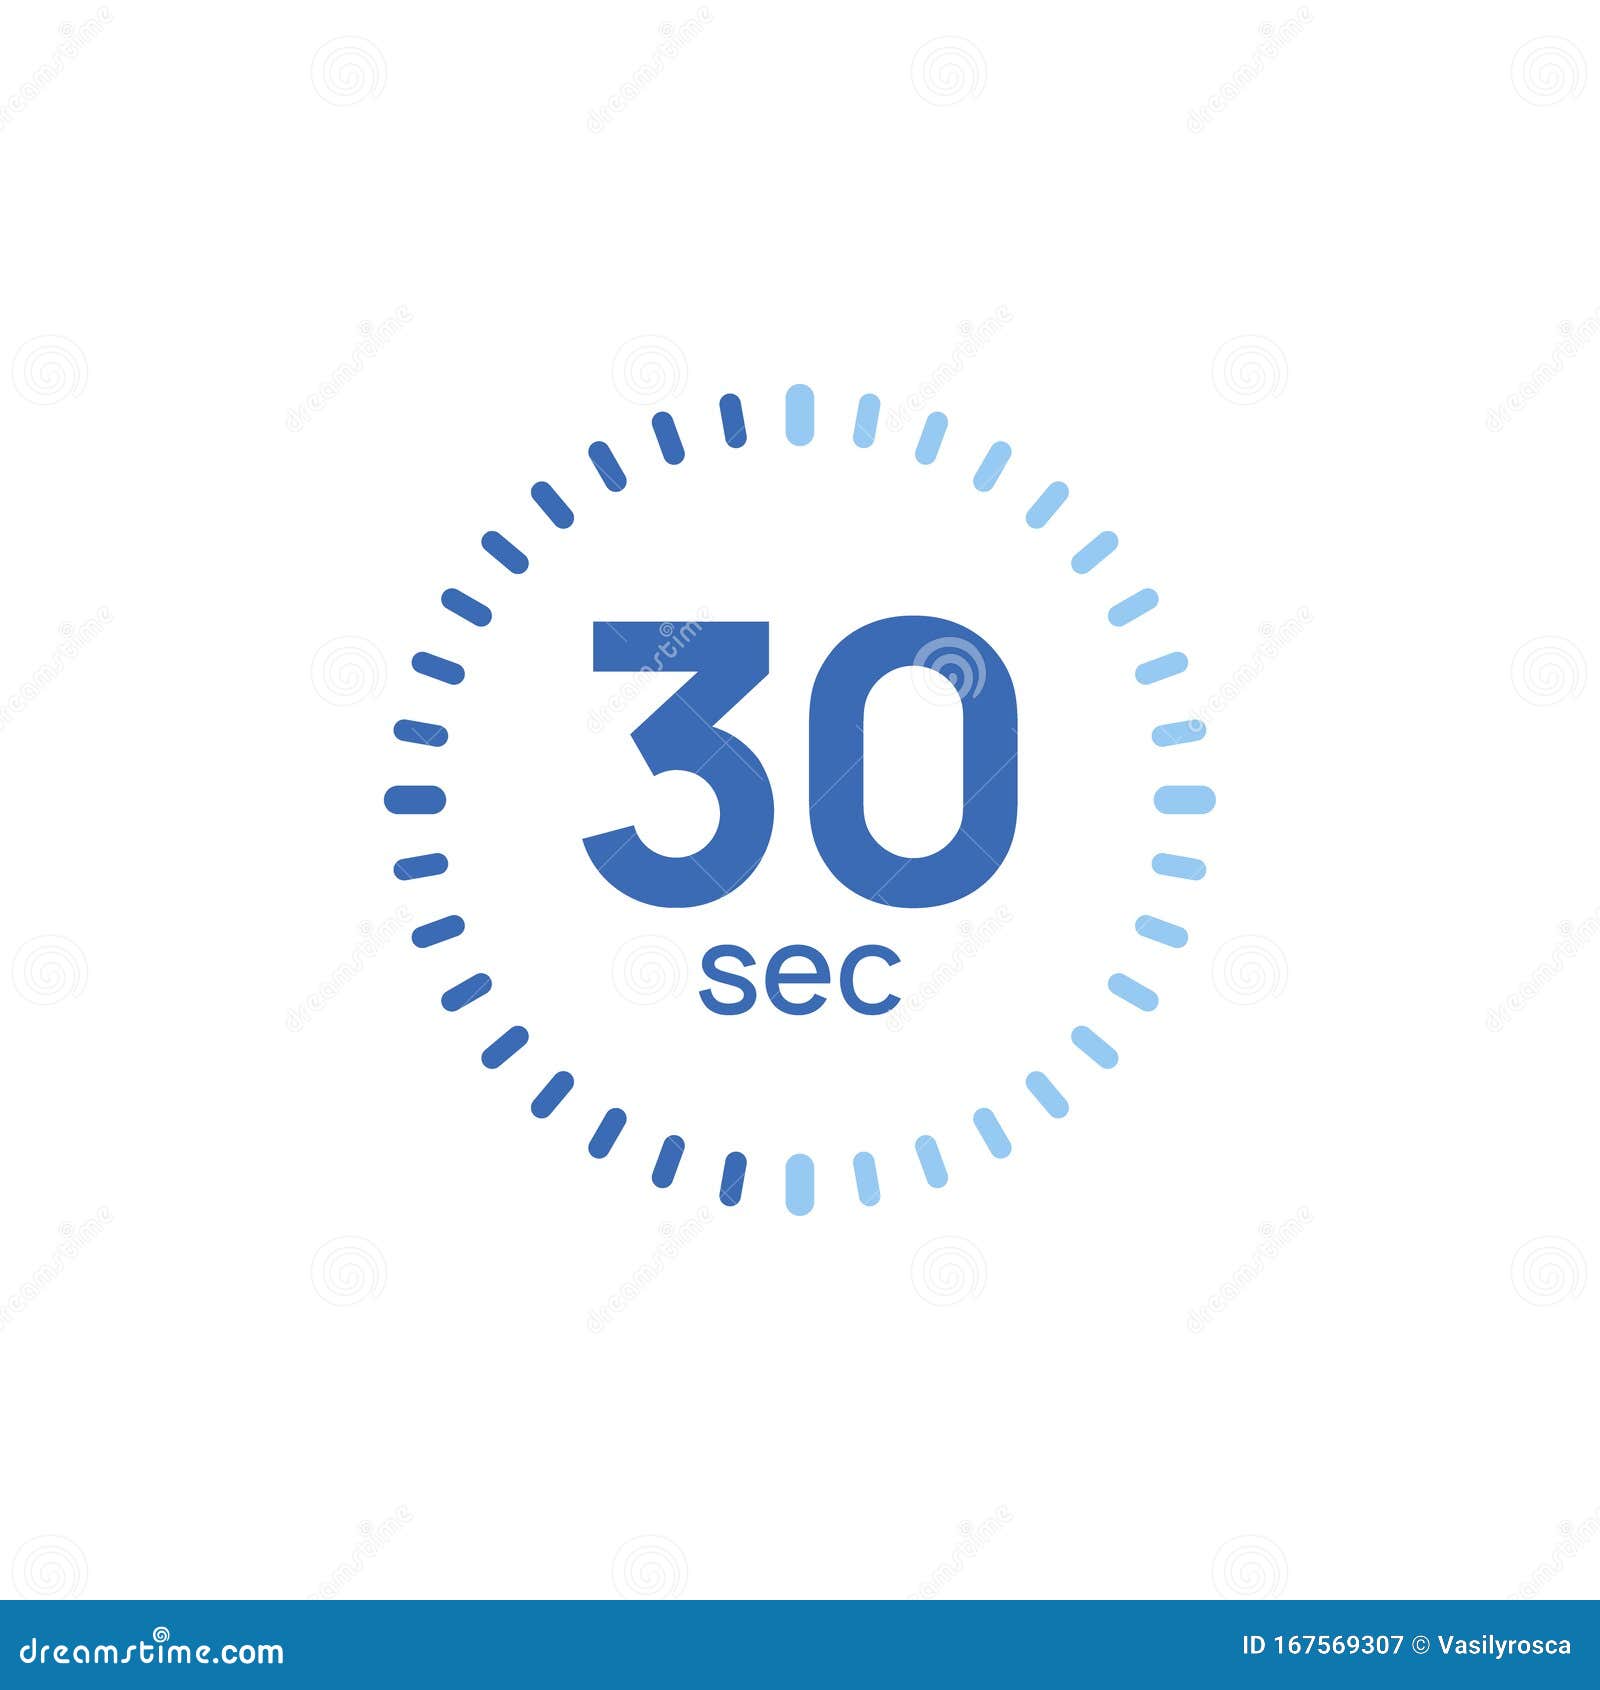 Клики в секунду 30 секунд. Таймер часы 30 секунд. Таймер обратного отсчета 30 секунд. Таймер пиктограмма 30 секунд. Анимация таймер 30 секунд.